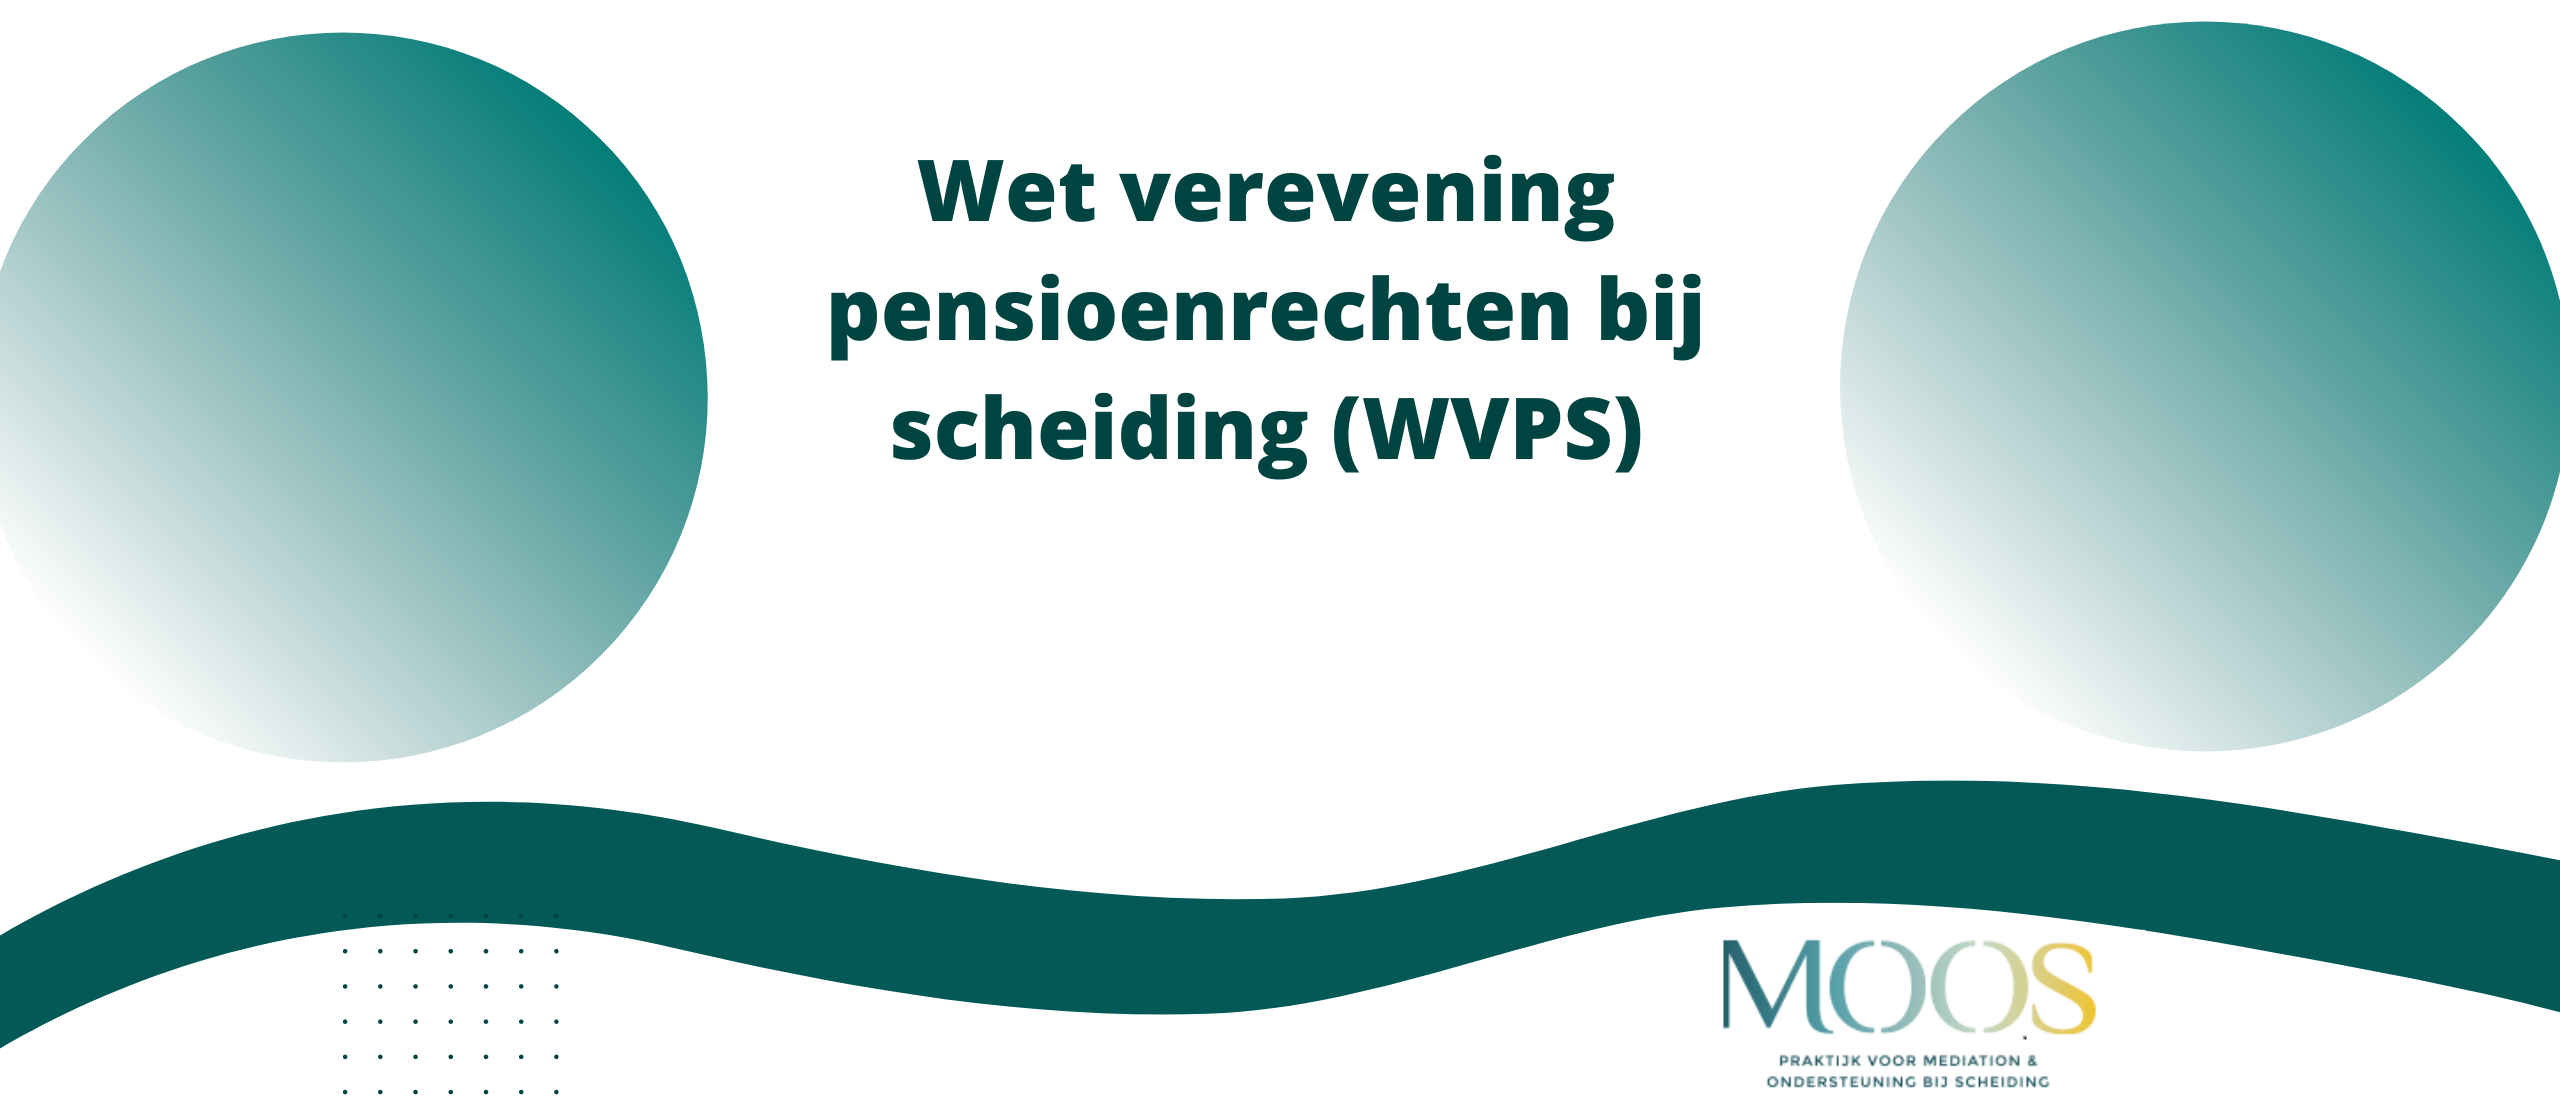 Wet verevening pensioenrechten bij scheiding (WVPS)